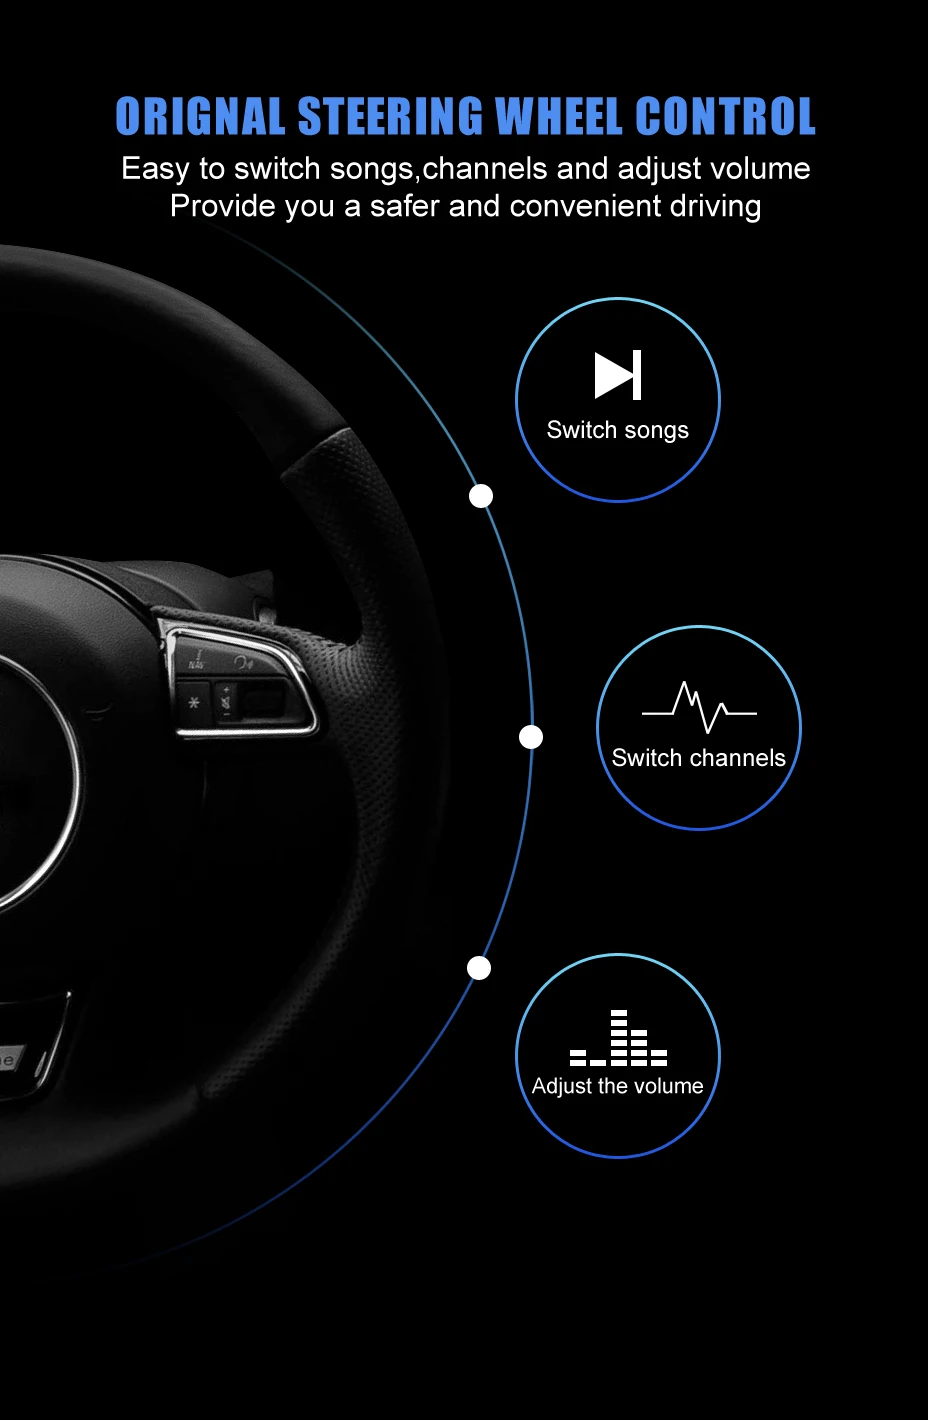 KANOR 10,25 дюймов сенсорный экран Android 7,1 2+ 32G Автомобильный gps мультимедийный навигатор для Jaguar XF XFL- автомобильный Авторадио Стерео